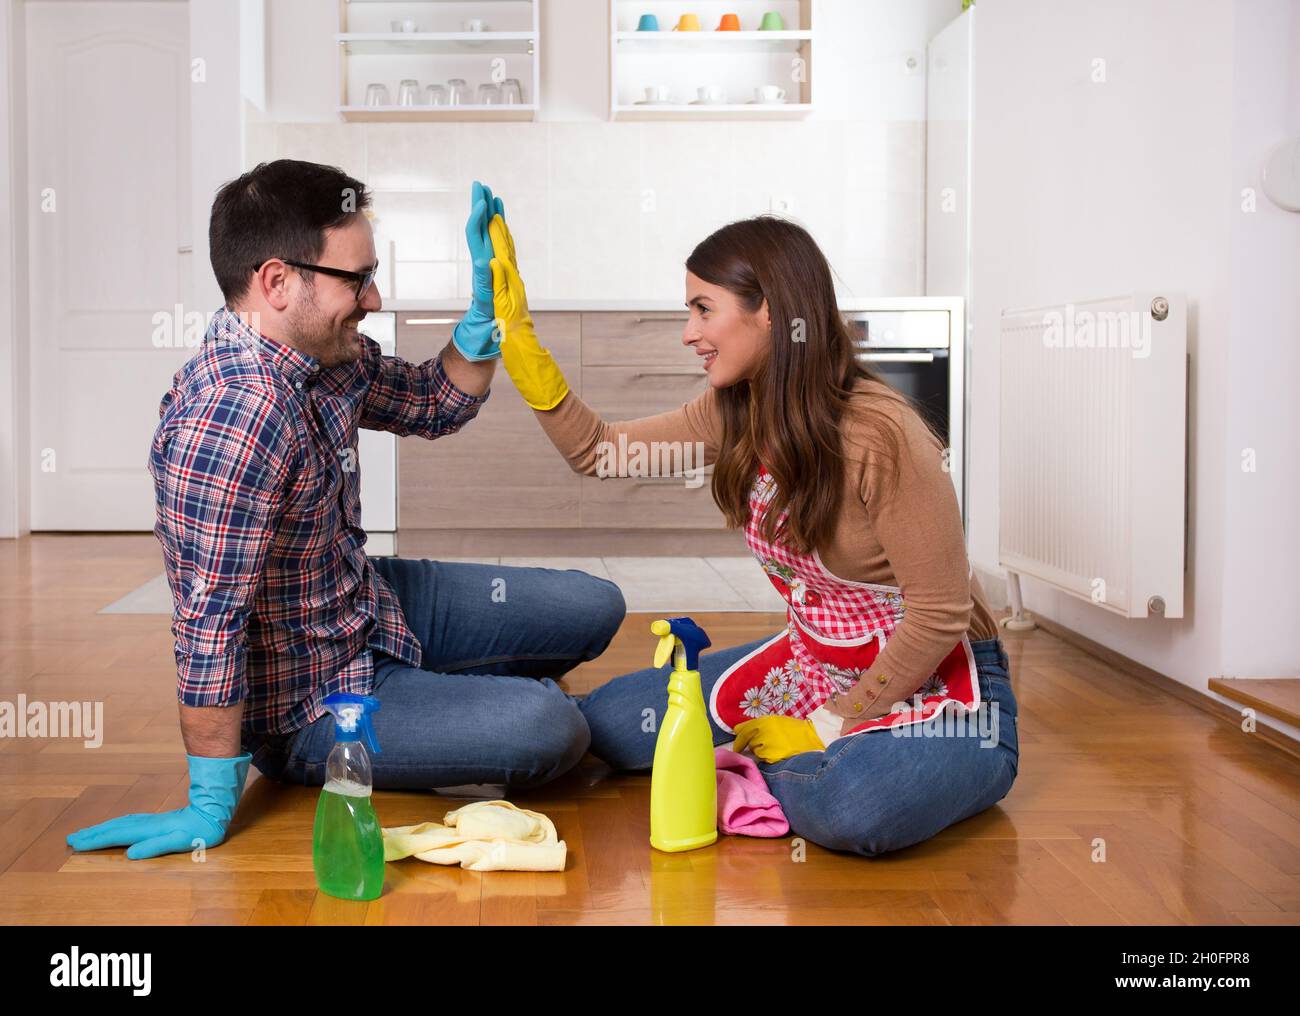 Ein glückliches junges Paar, das nach dem Housekeeping auf dem Boden saß und mir fünf Gesten gab Stockfoto